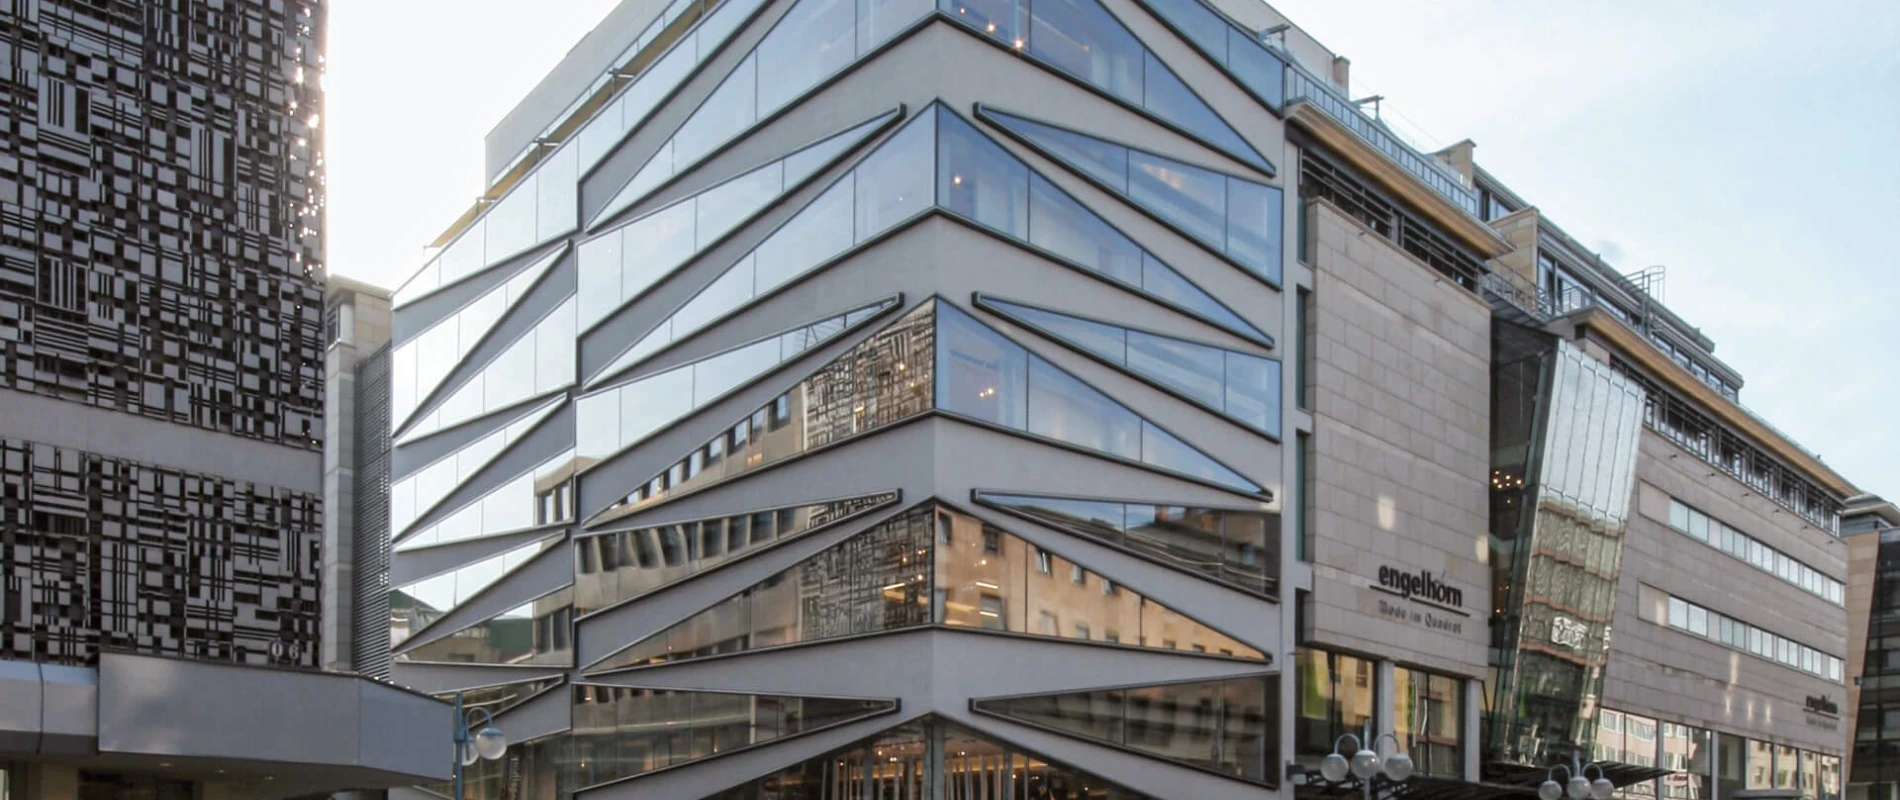 engelhorn Mannheim Umbau Department Store Fassade